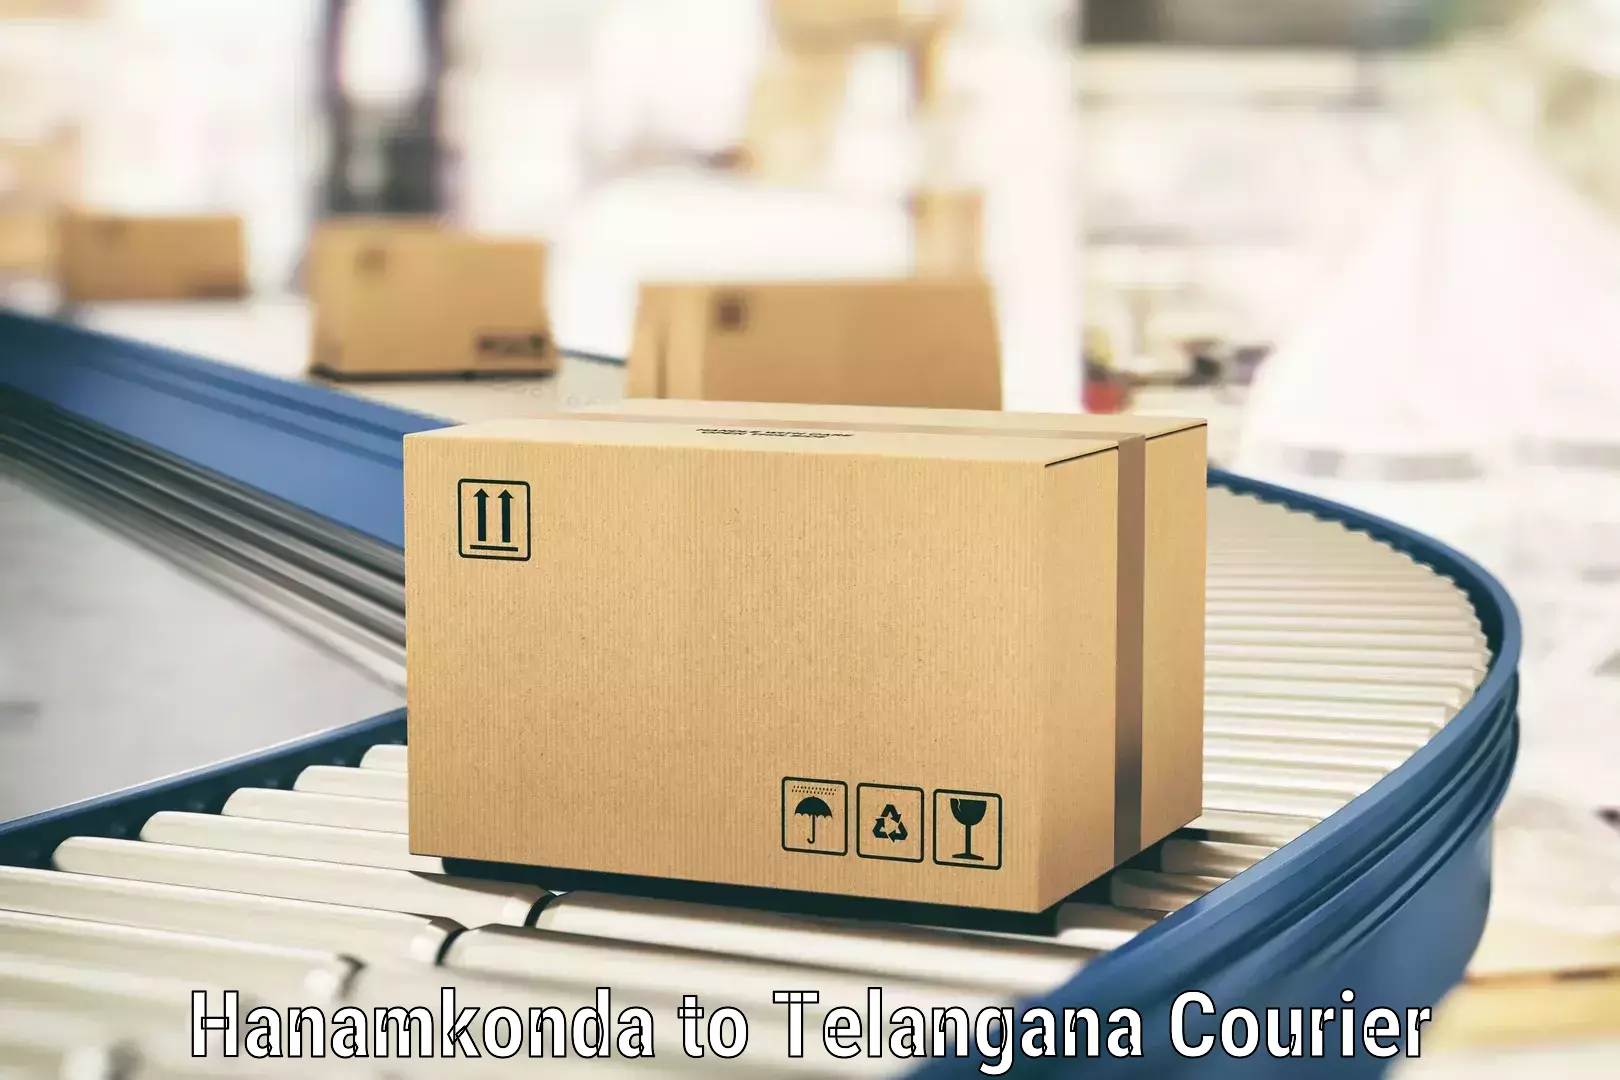 Nationwide parcel services Hanamkonda to Tadoor